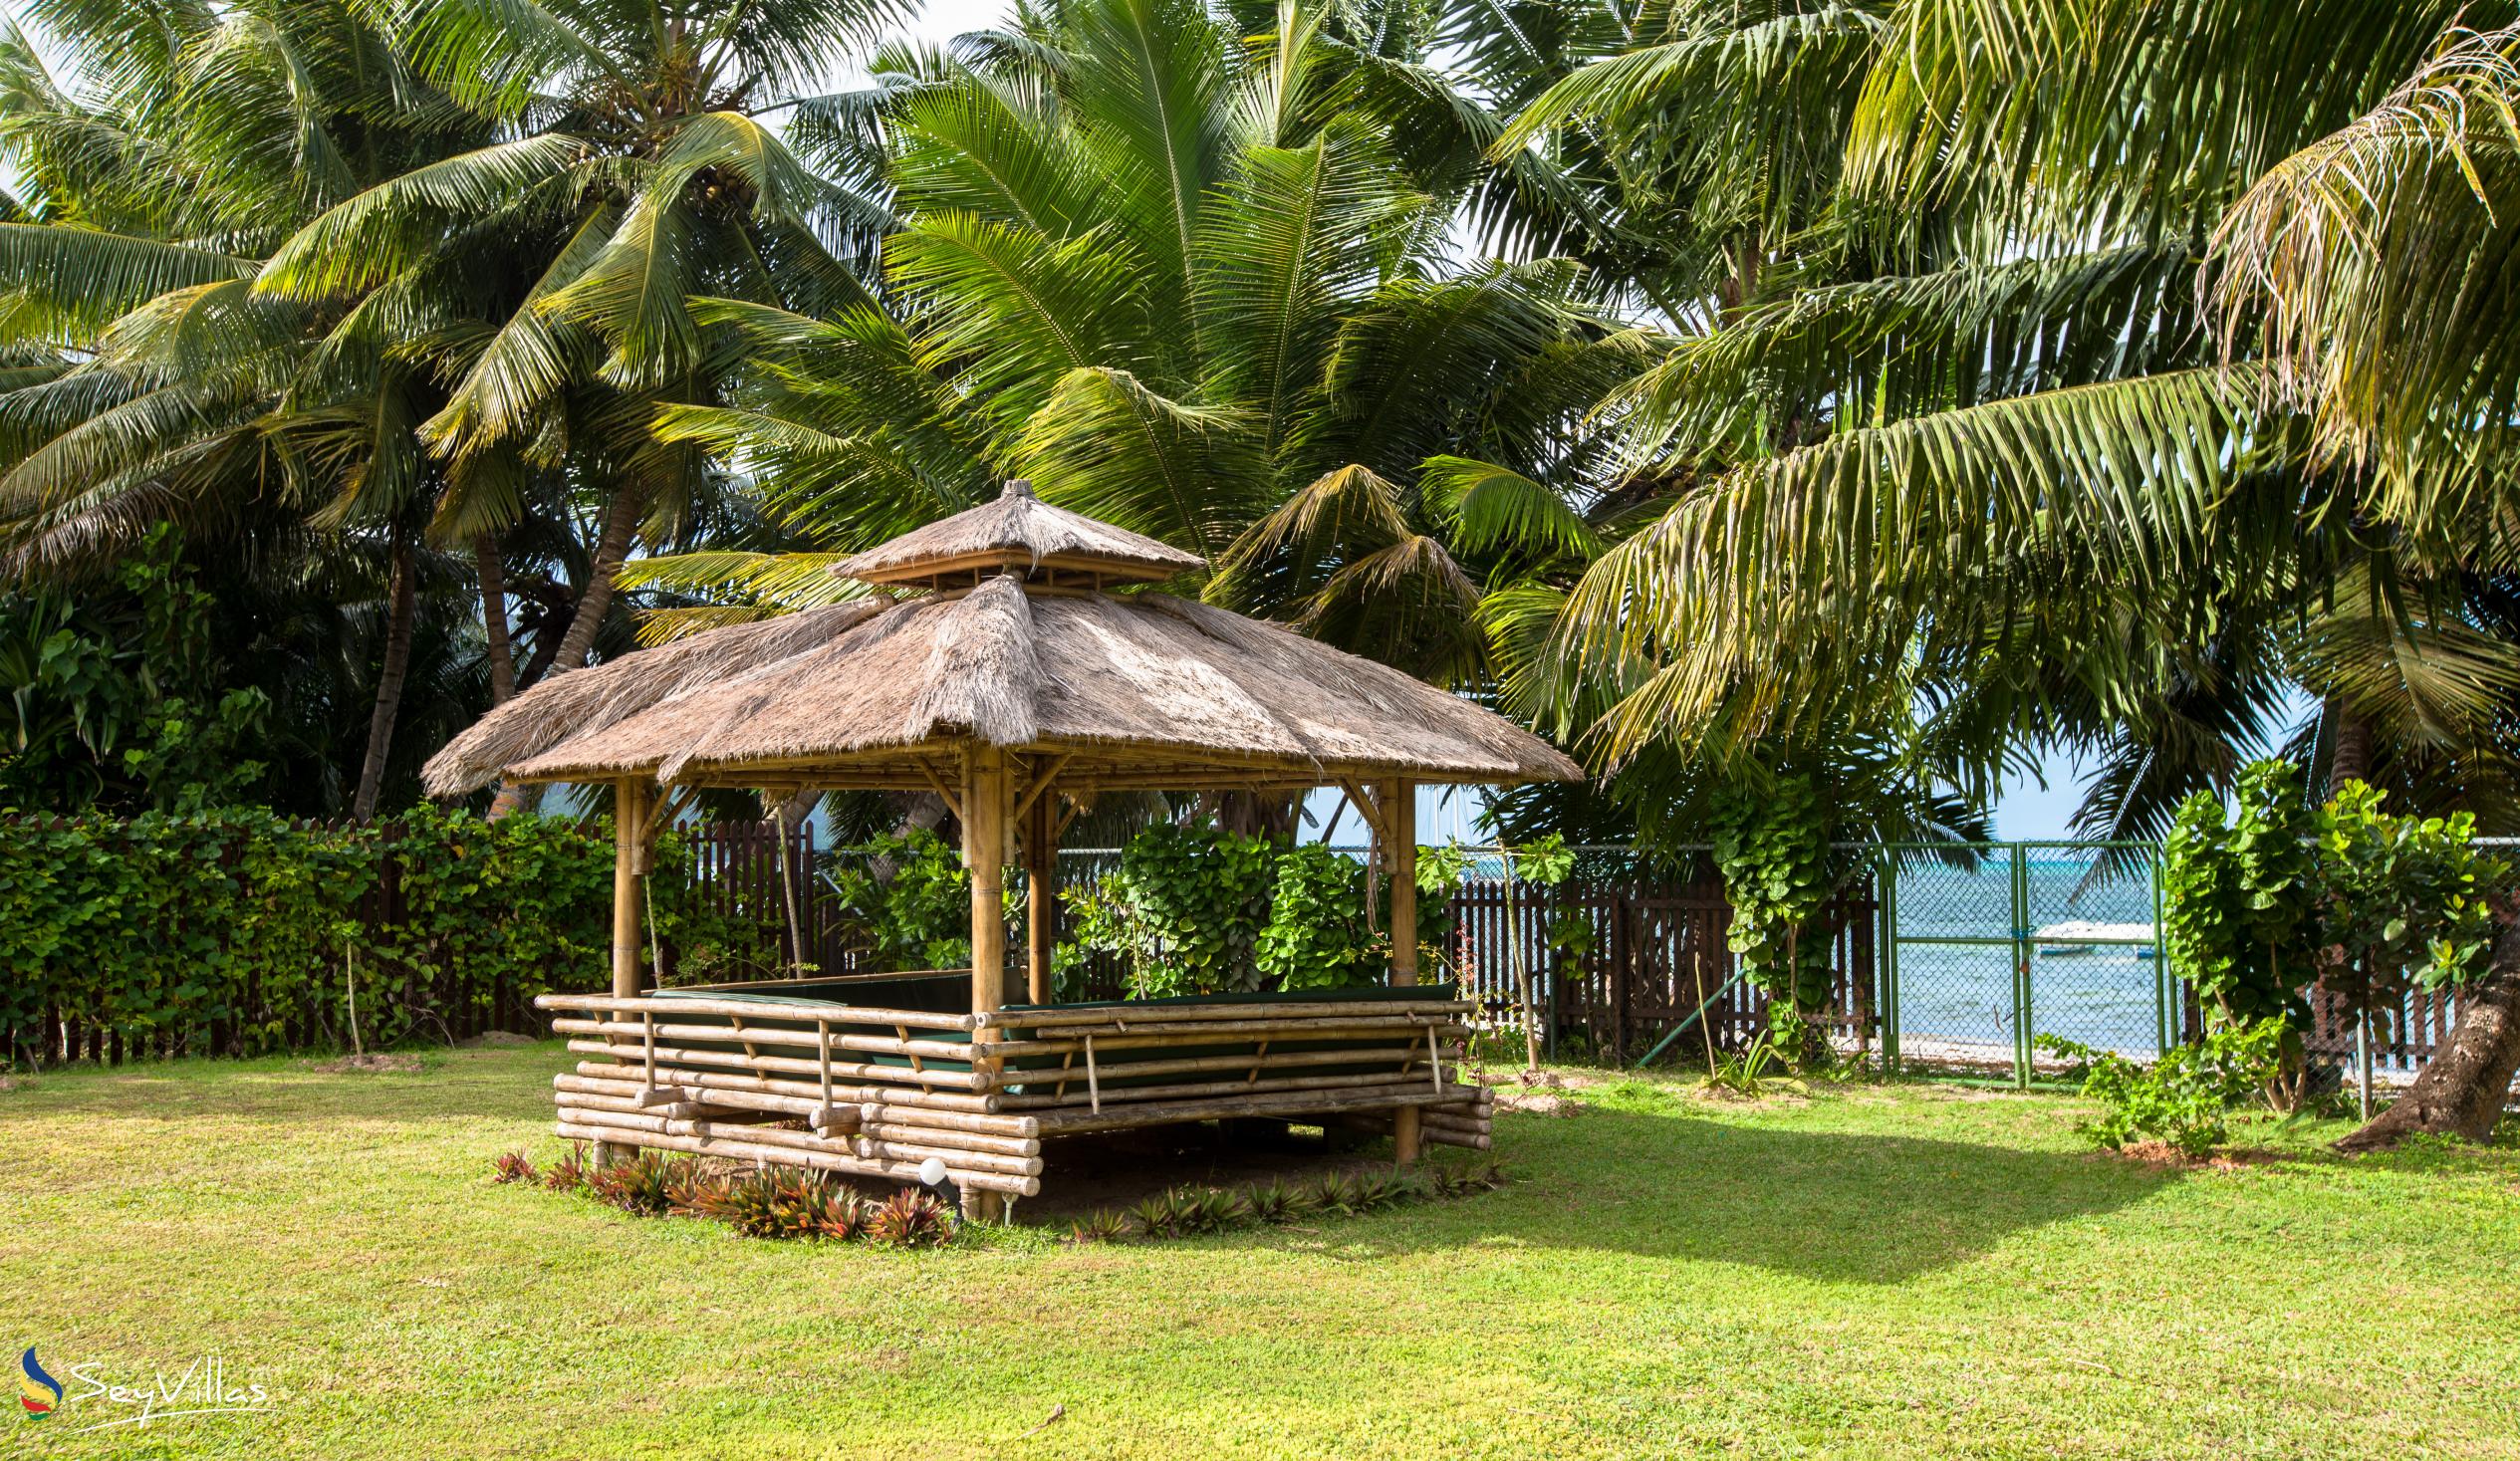 Foto 9: Le Relax Beach Resort - Aussenbereich - Praslin (Seychellen)